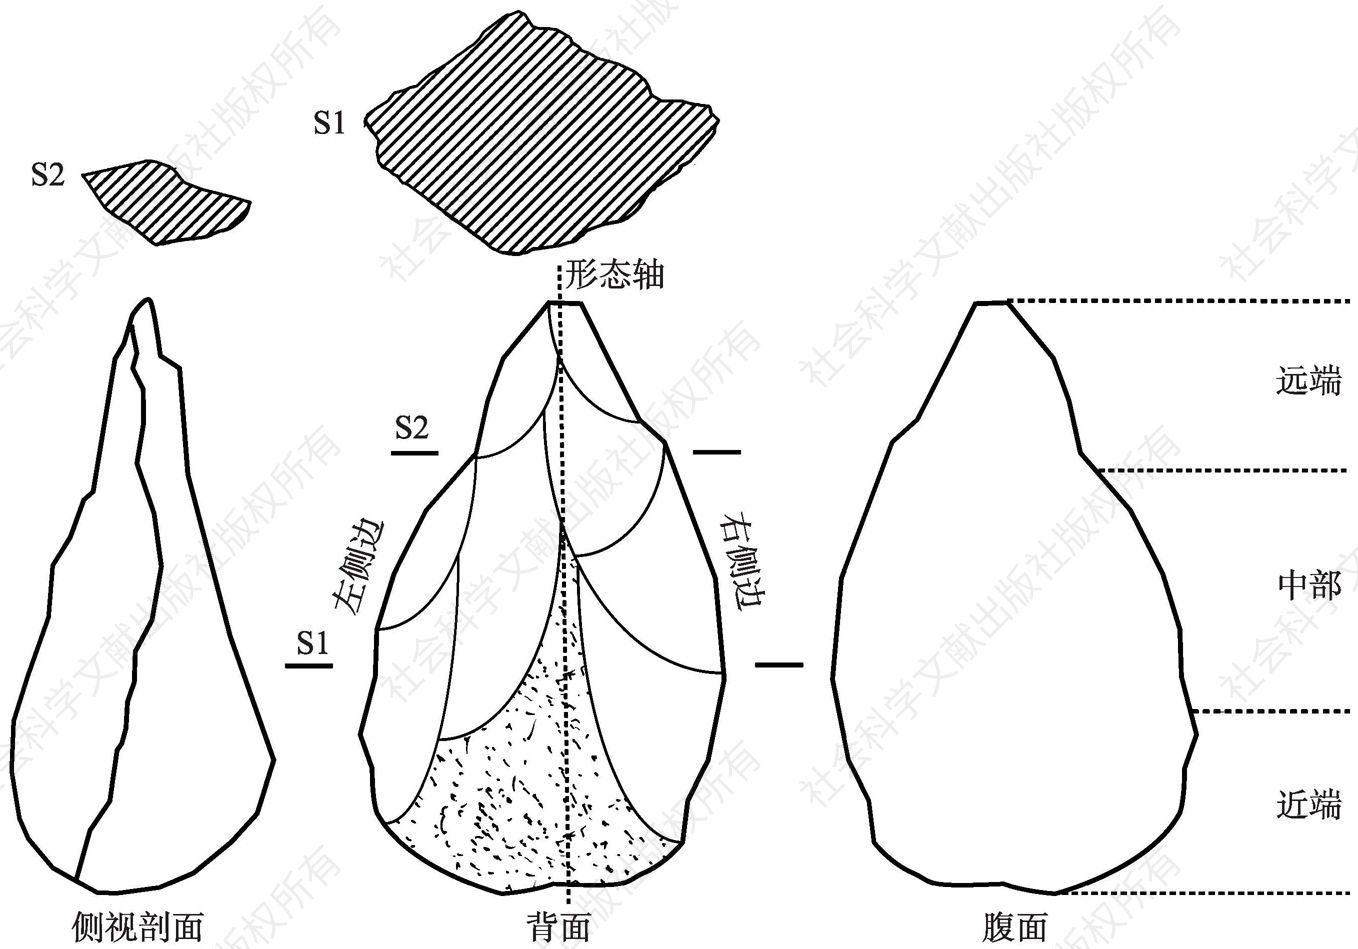 图1-2 中国手斧（修型工具）的定位观察方式和描述术语（S1代表中部的横截面形态，S2代表远端横截面的形态）